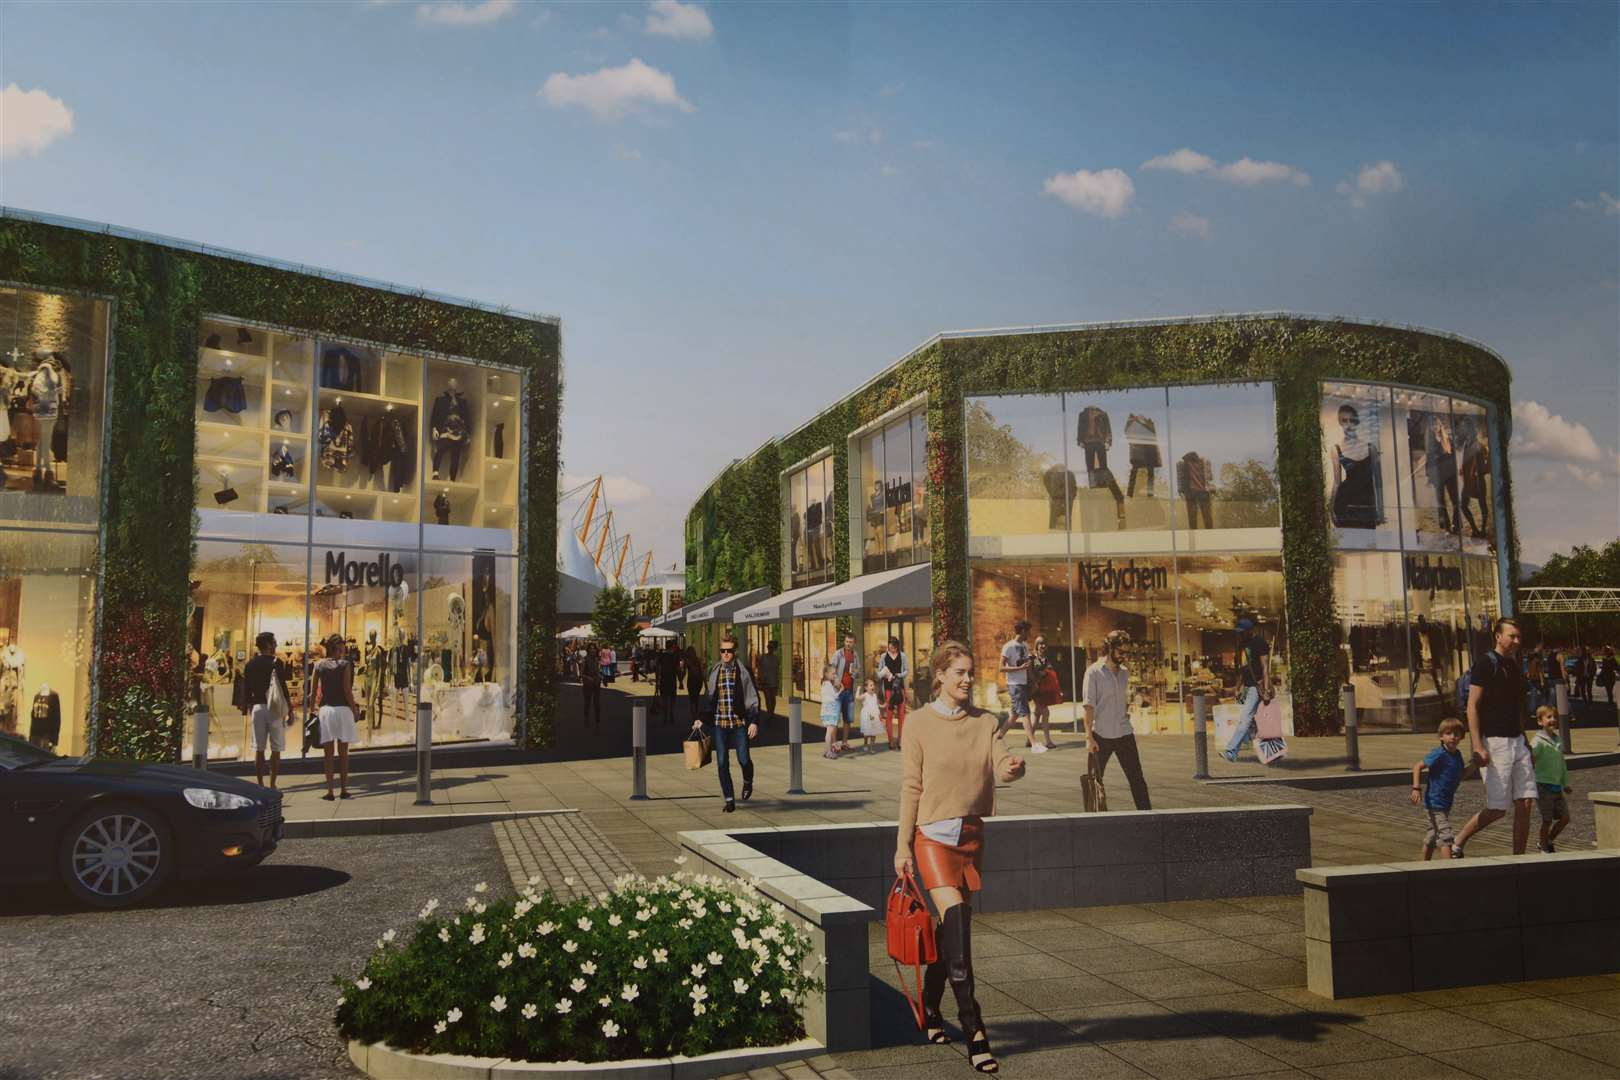 The expansion plans at Ashford Designer Outlet